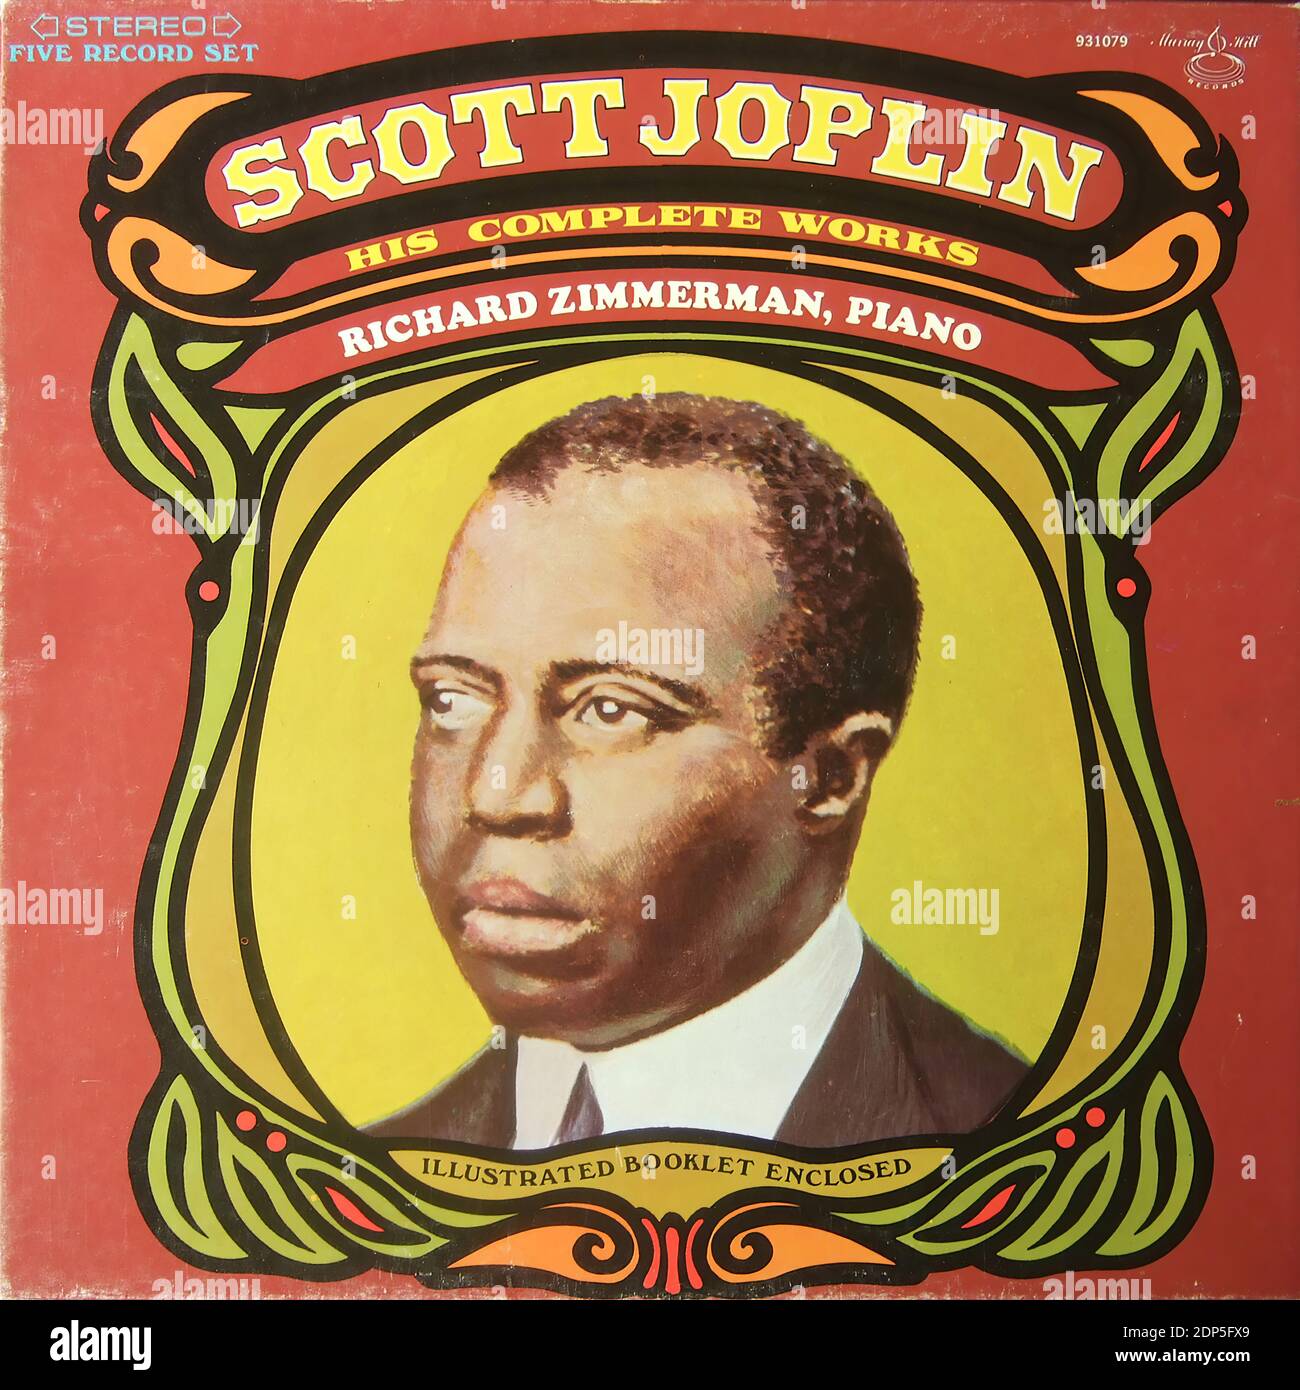 Scott Joplin - His complete Works - Richard Zimmerman piano, Mercury Hill 931079, Box 5 lp - copertina di album in vinile d'epoca Foto Stock